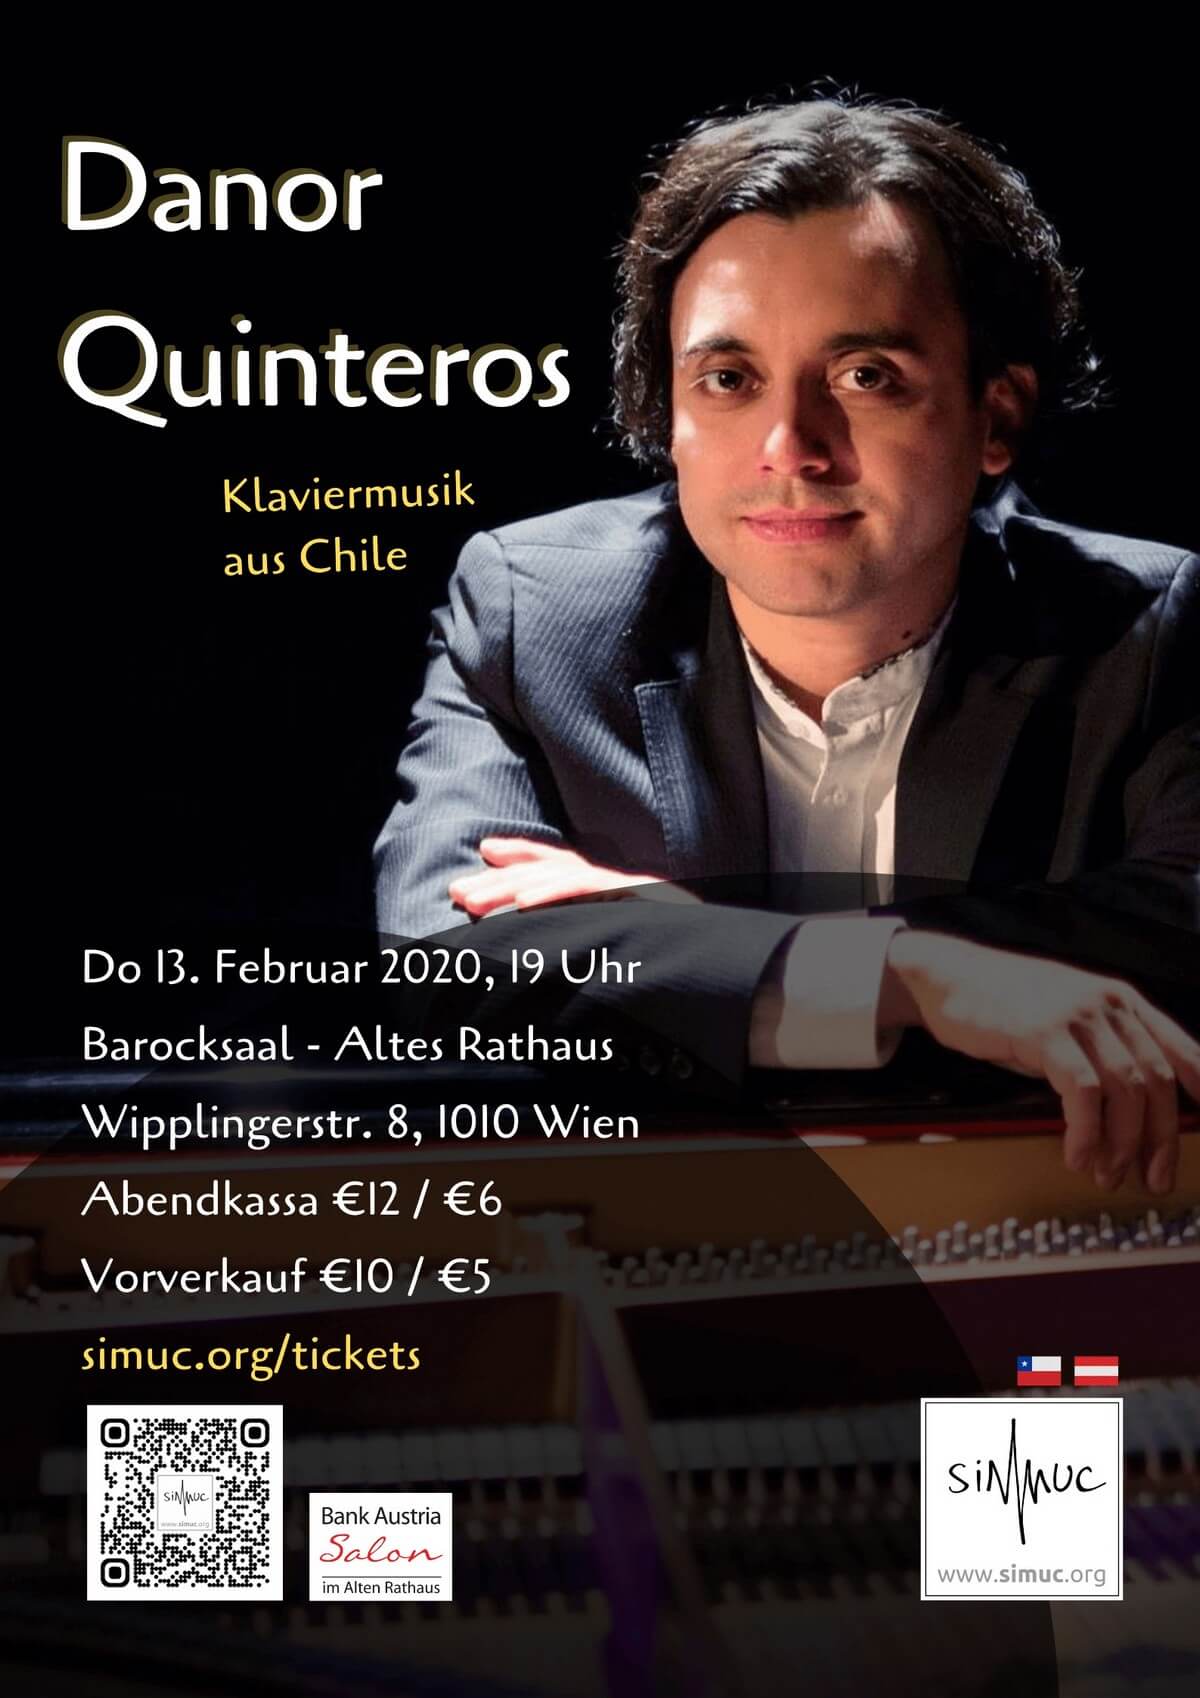 Danor Quinteros in Vienna: Piano Music From Chile